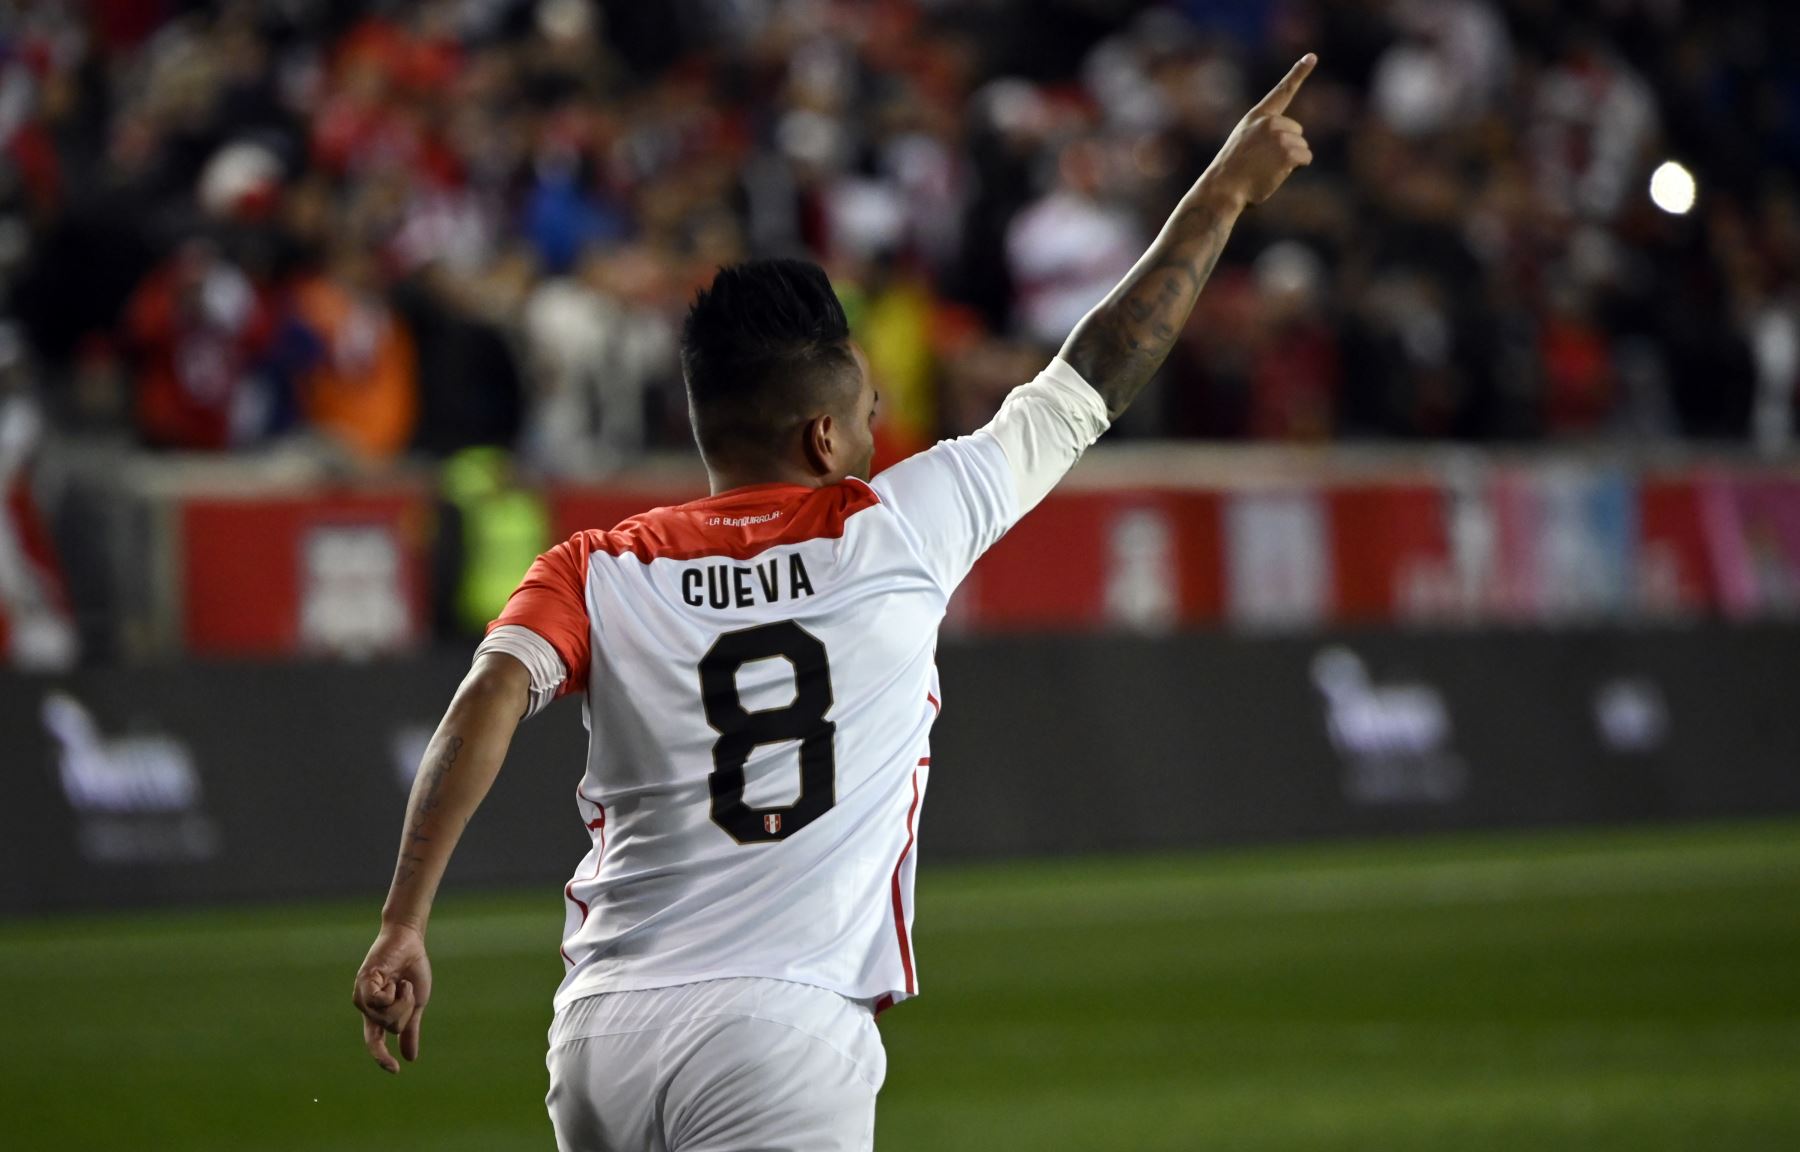 Christian Cueva de Perú celebra después de marcar contra Paraguay durante el partido amistoso internacional entre Perú y Paraguay en el Red Bull Arena de Nueva Jersey.Foto:AFP